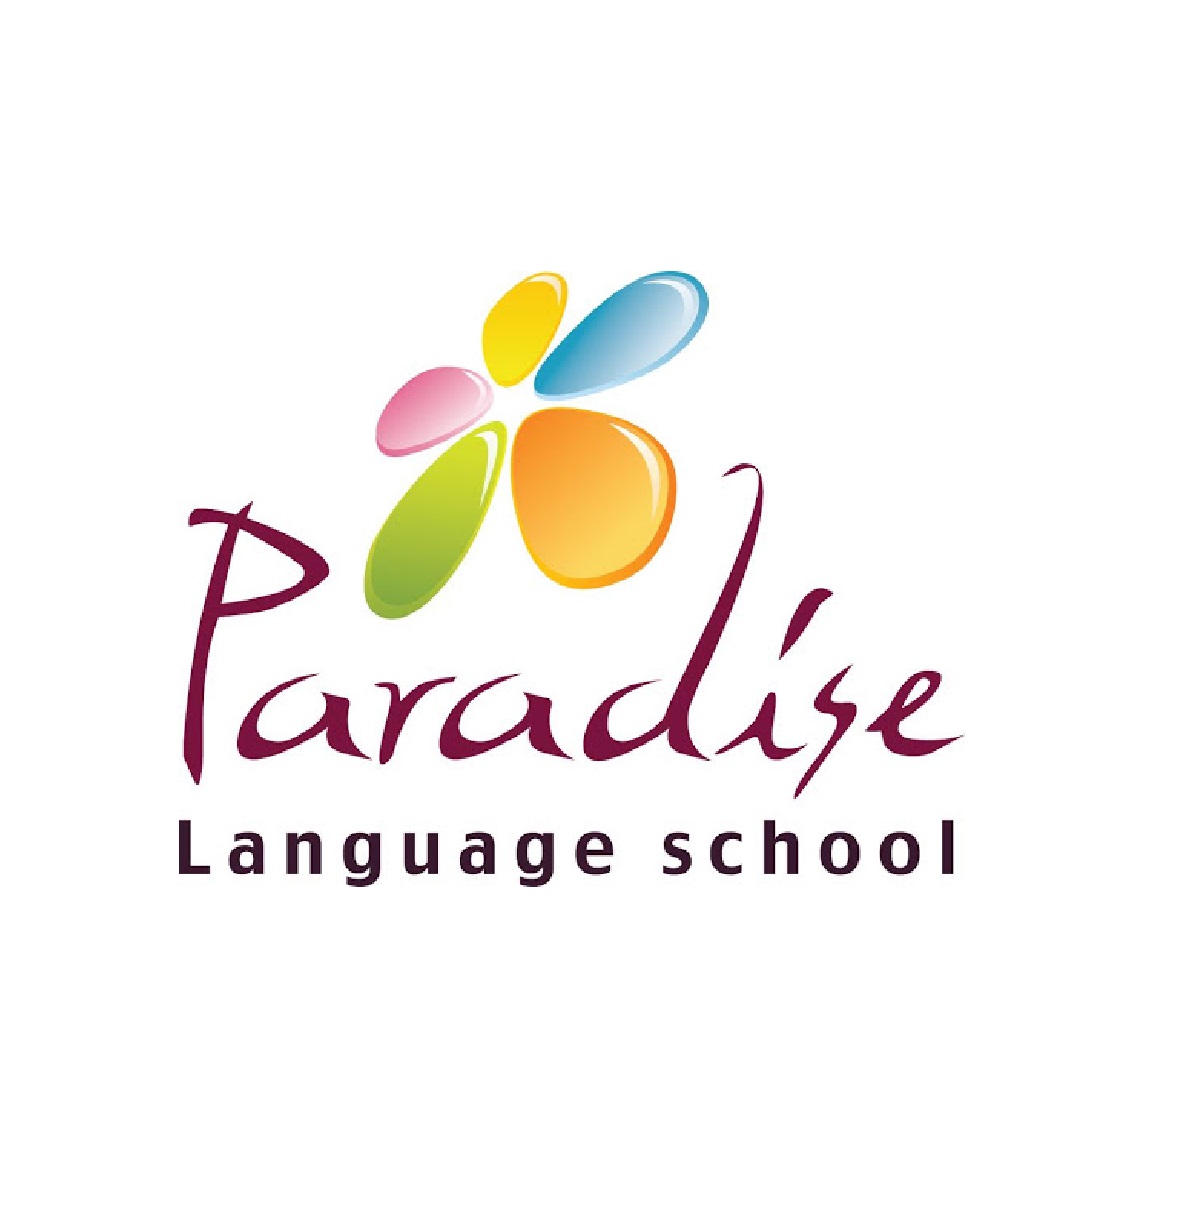 مدرسة براديس الدولية للغات خاصة